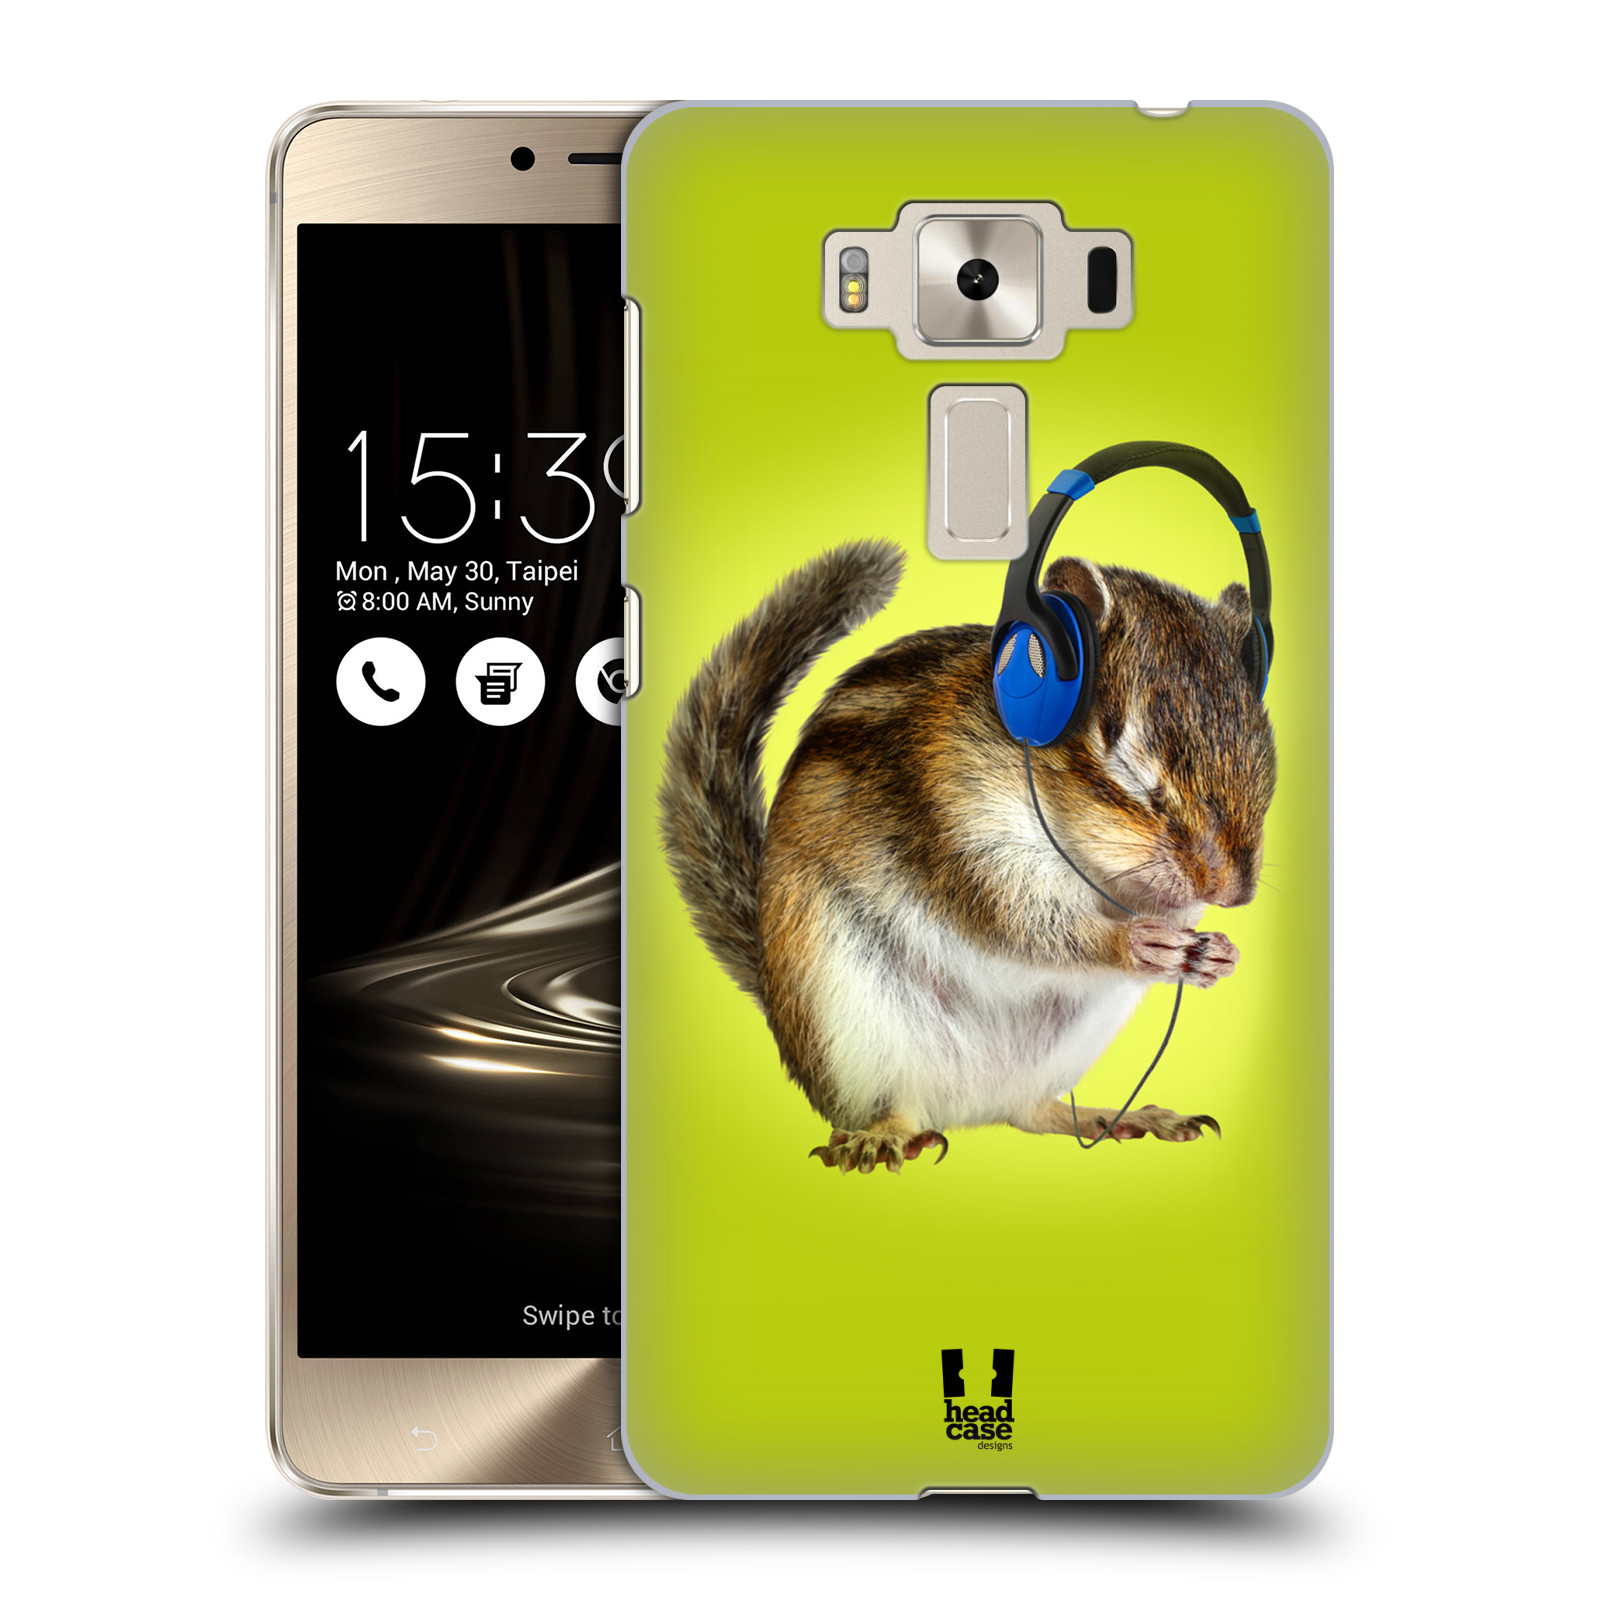 HEAD CASE plastový obal na mobil Asus Zenfone 3 DELUXE ZS550KL vzor Legrační zvířátka veverka se sluchátky